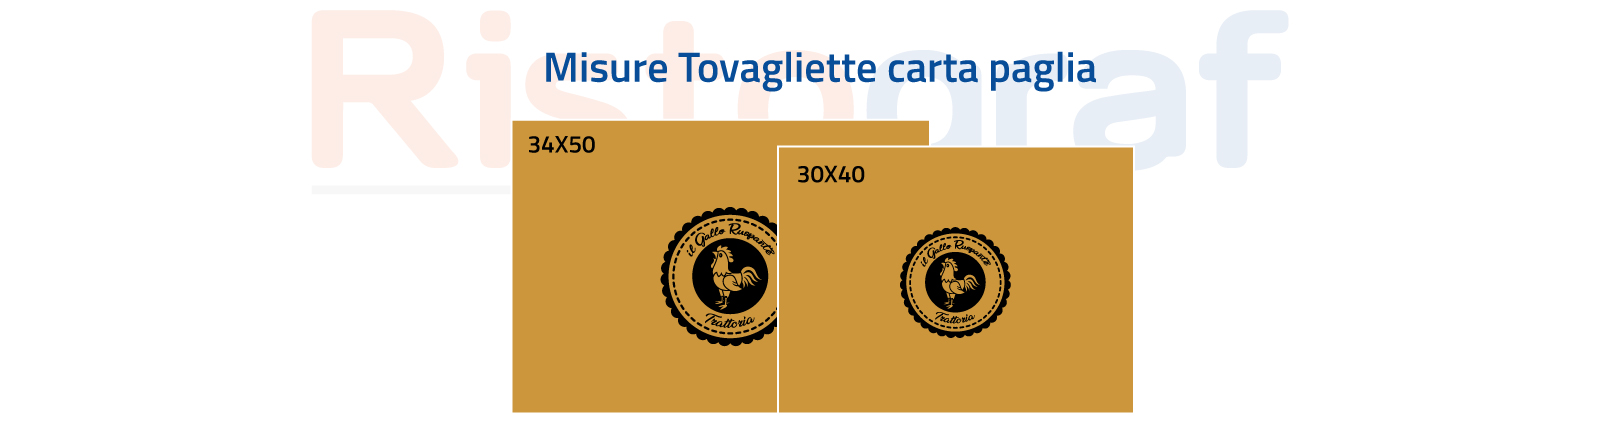 Tov-schede-misure-carta-paglia-artigianale-01